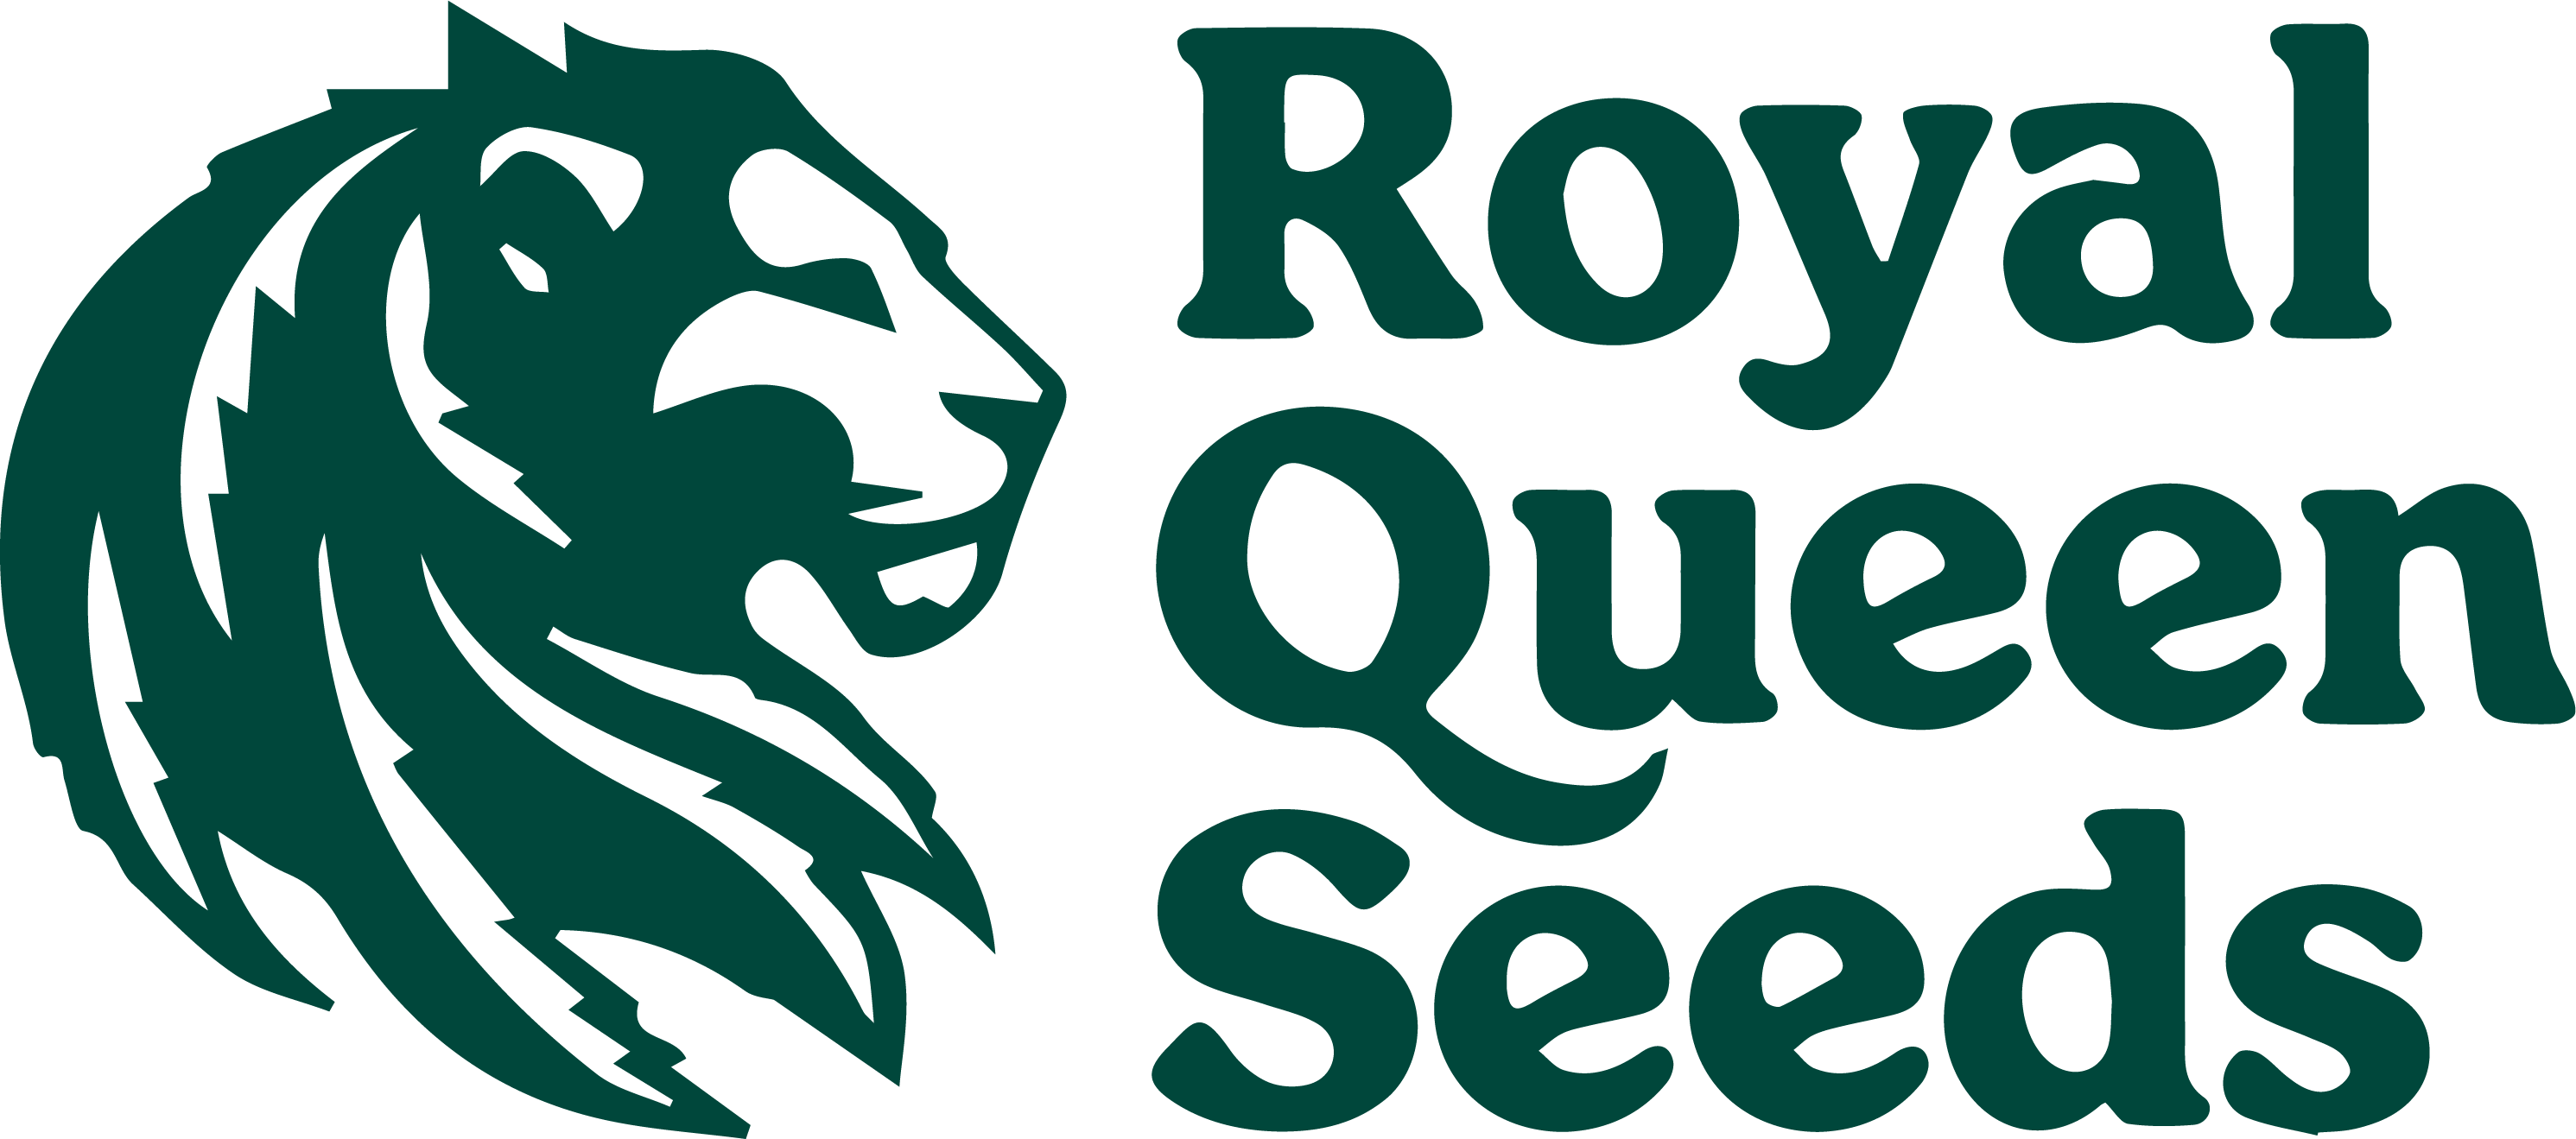 Royal Queen Seeds - Autoflower cannabis seeds